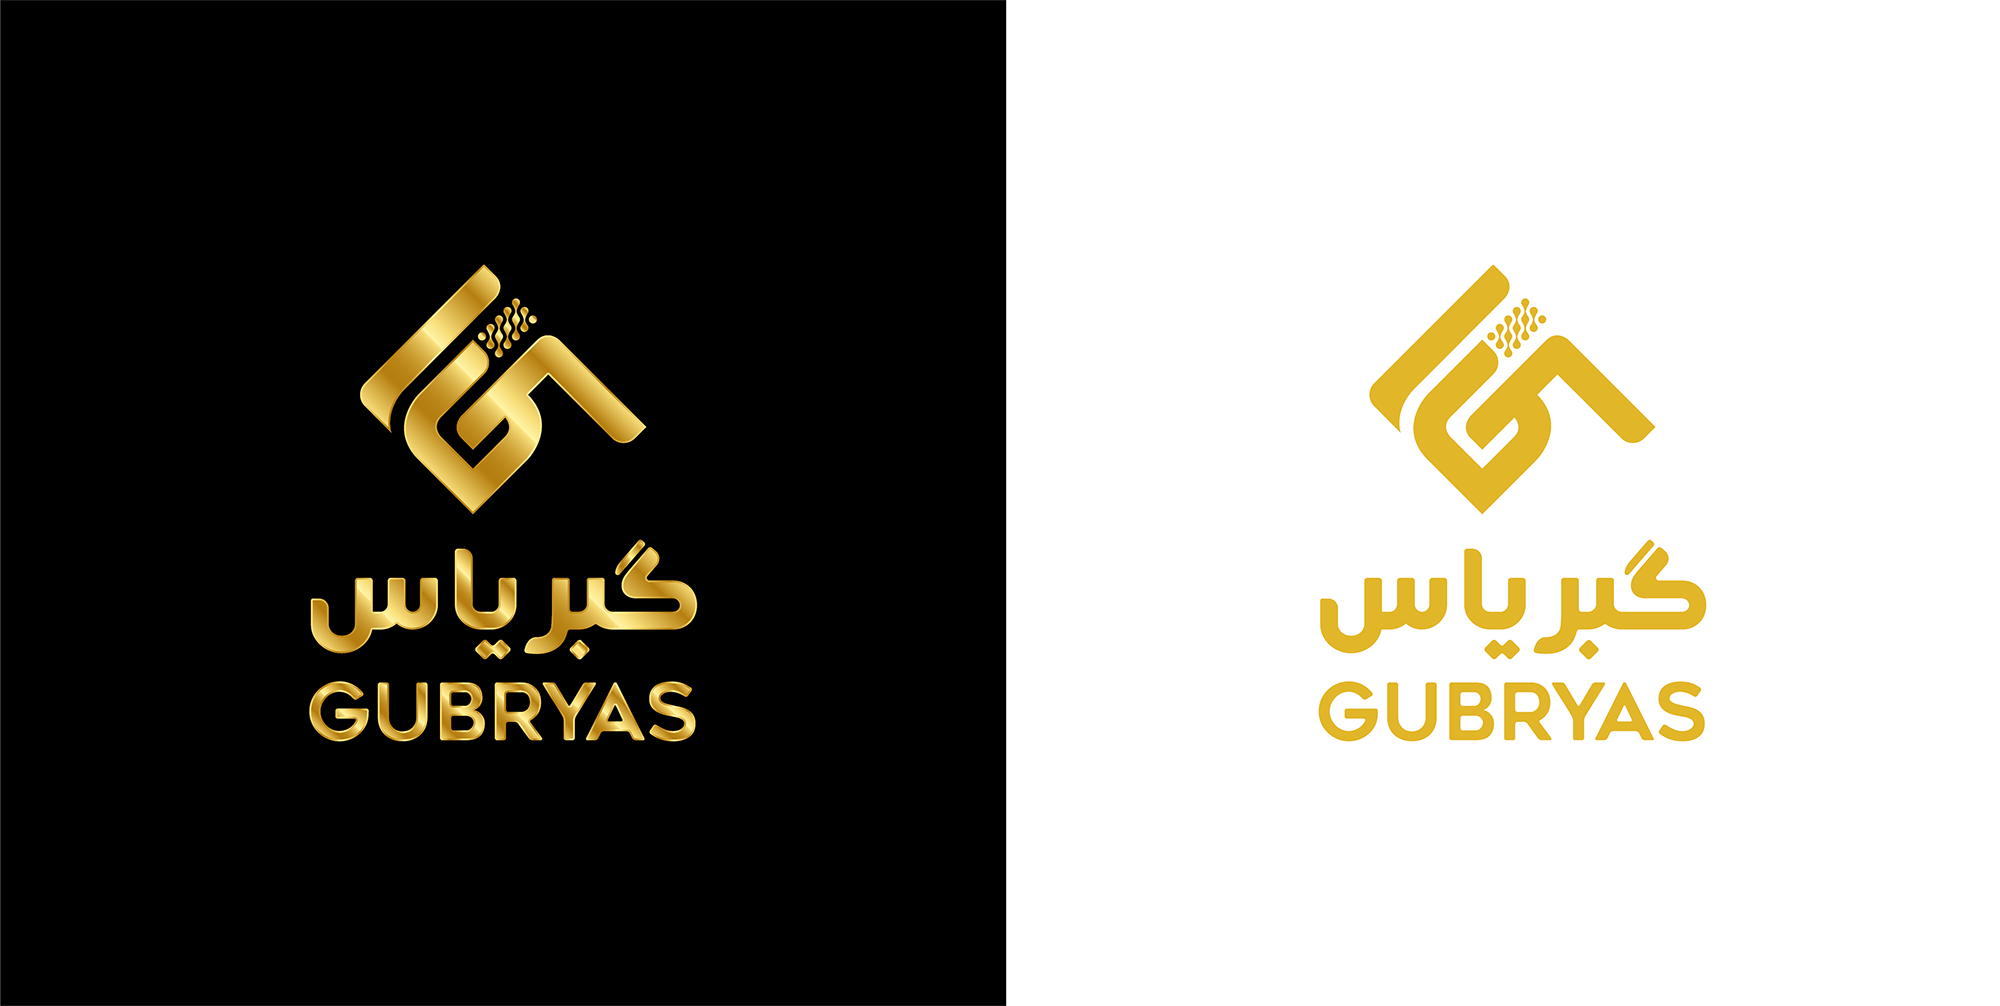 Gubryas Final